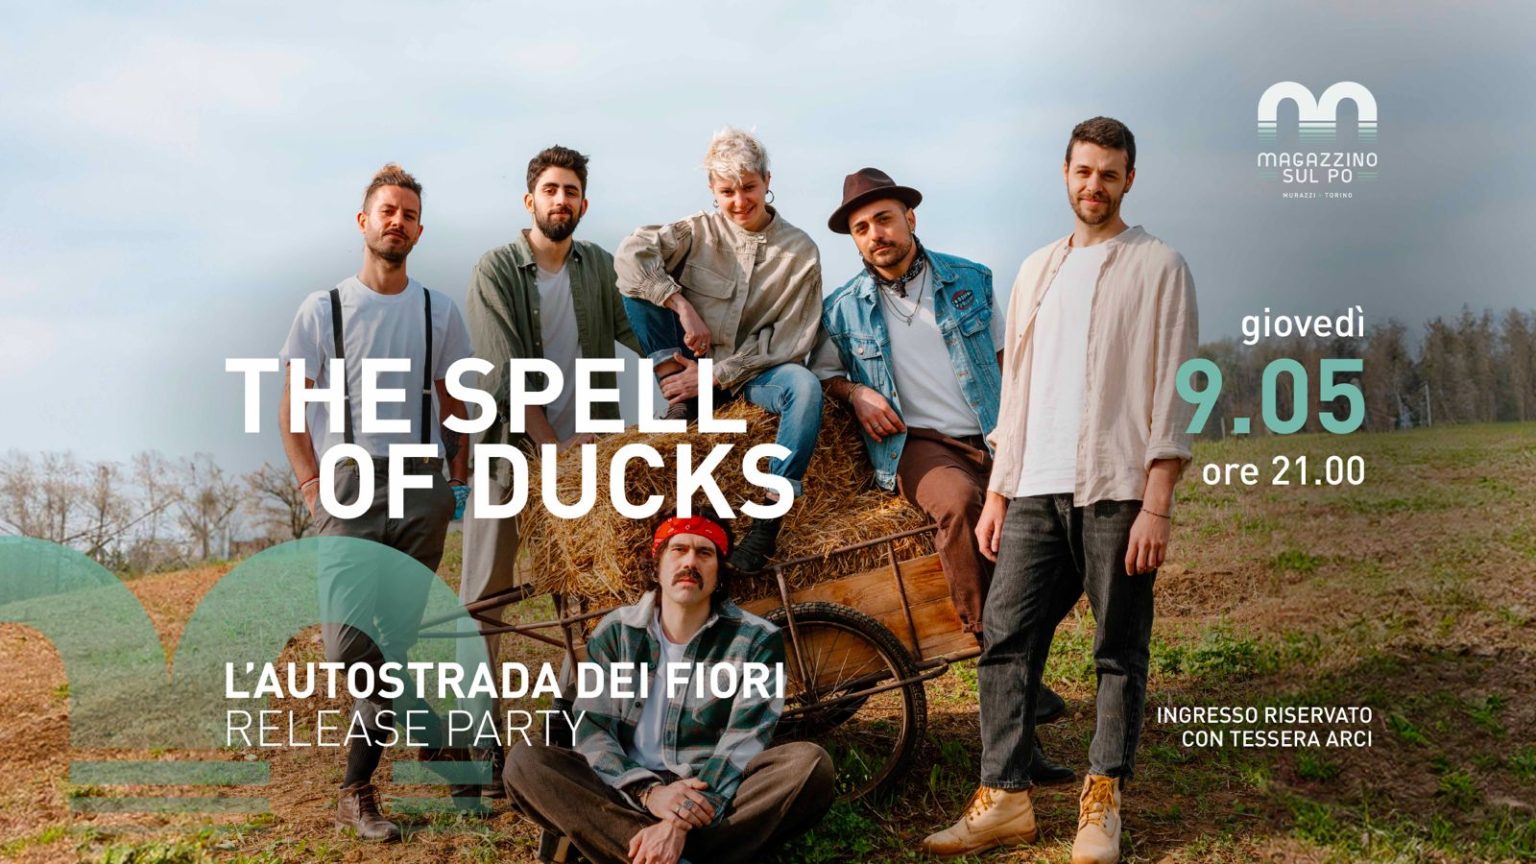 The Spell of Ducks – “L’autostrada dei fiori” release party